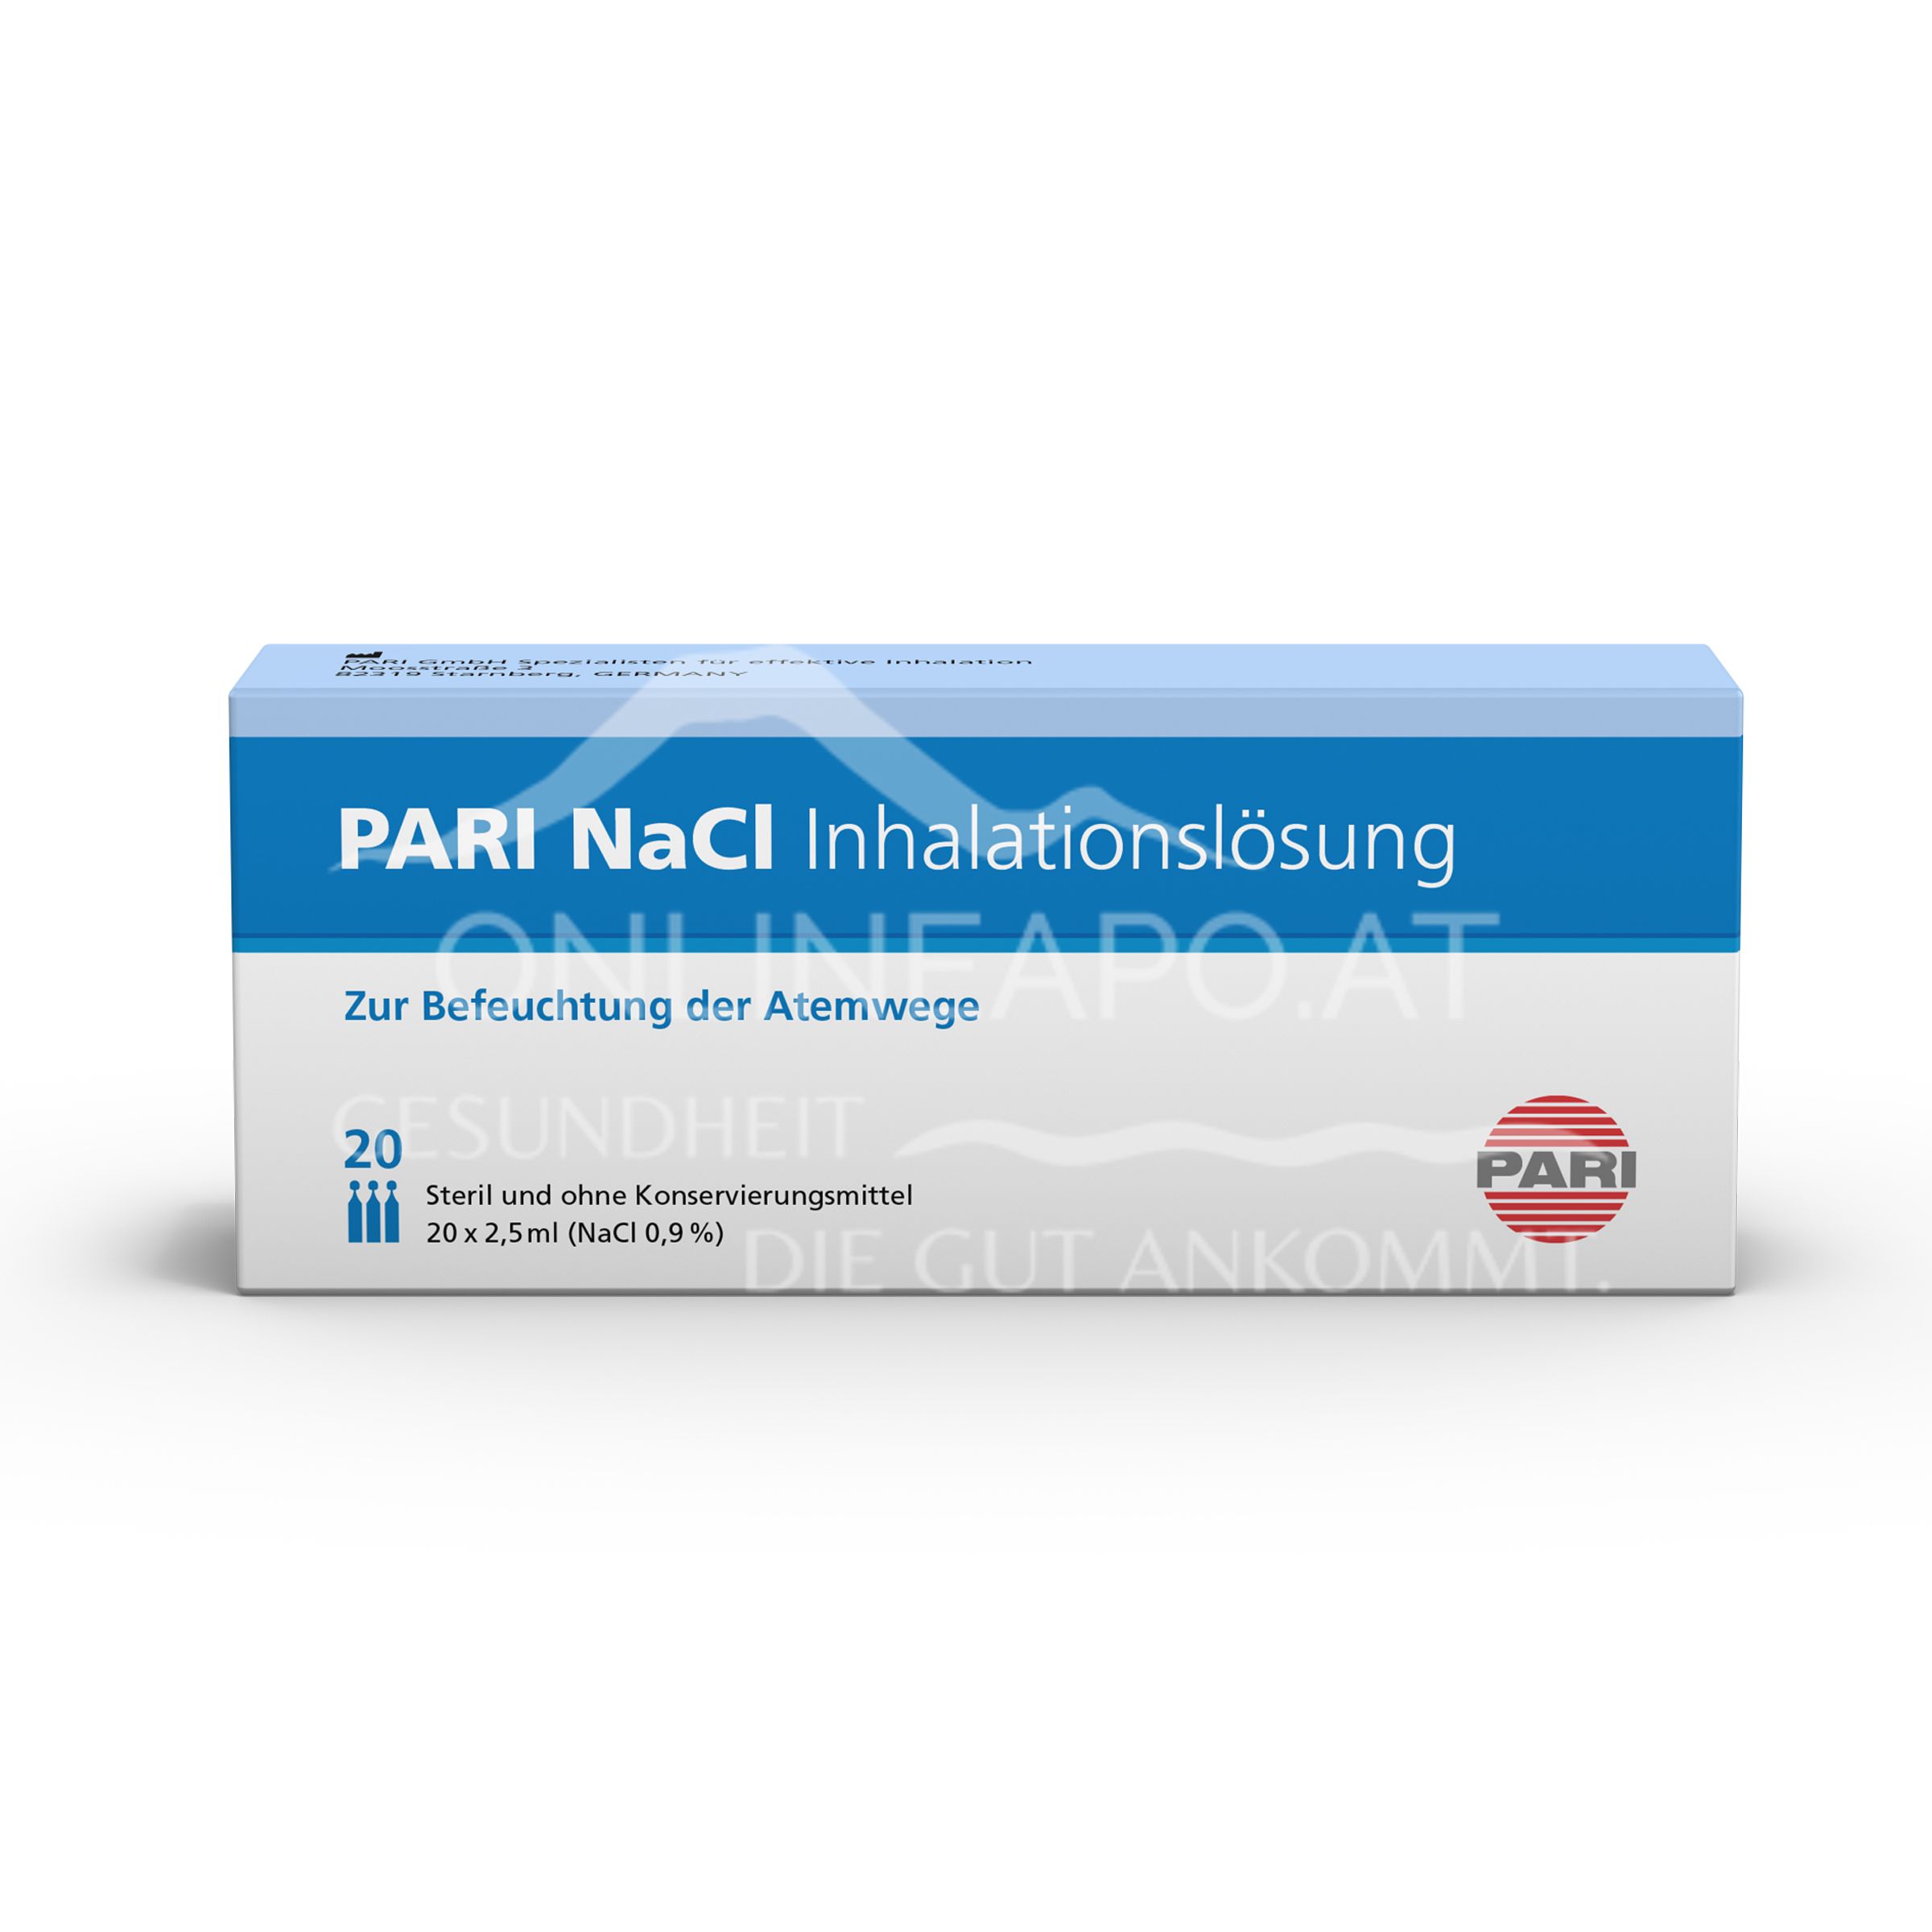 PARI NaCl 0,9% Inhalationslösung 20 x 2,5 ml